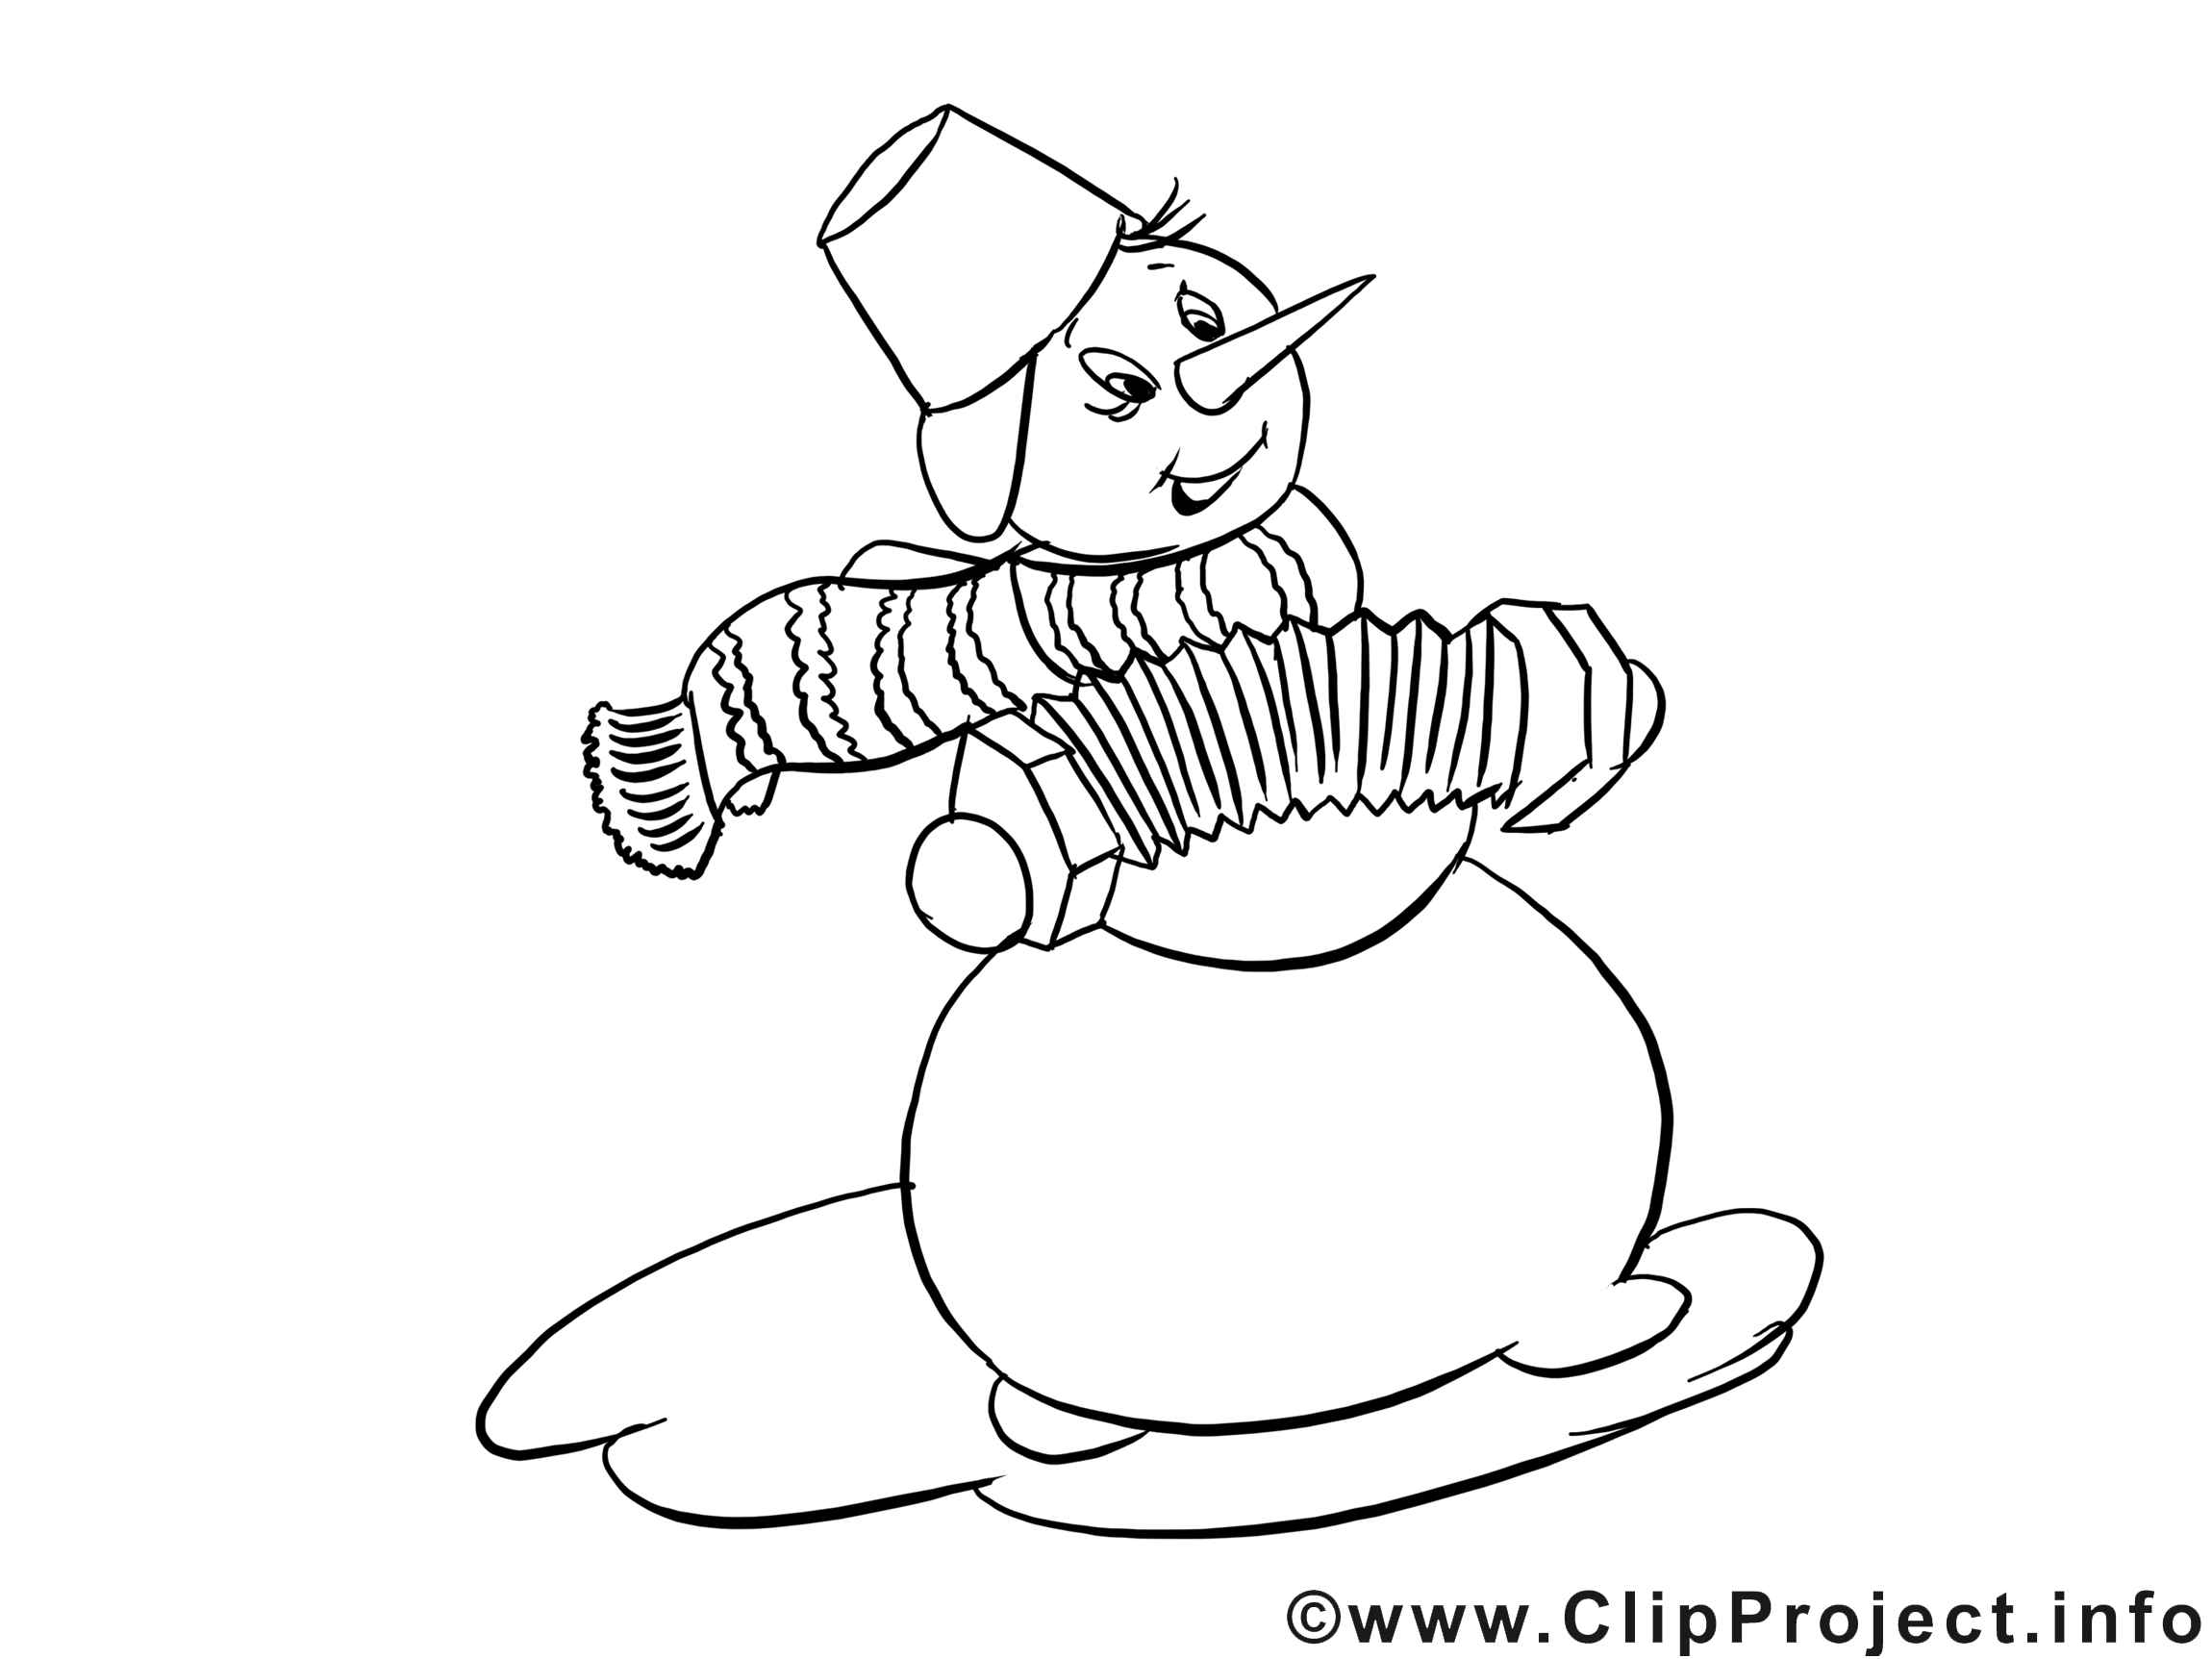 Bonhomme de neige clip arts – Hiver à imprimer